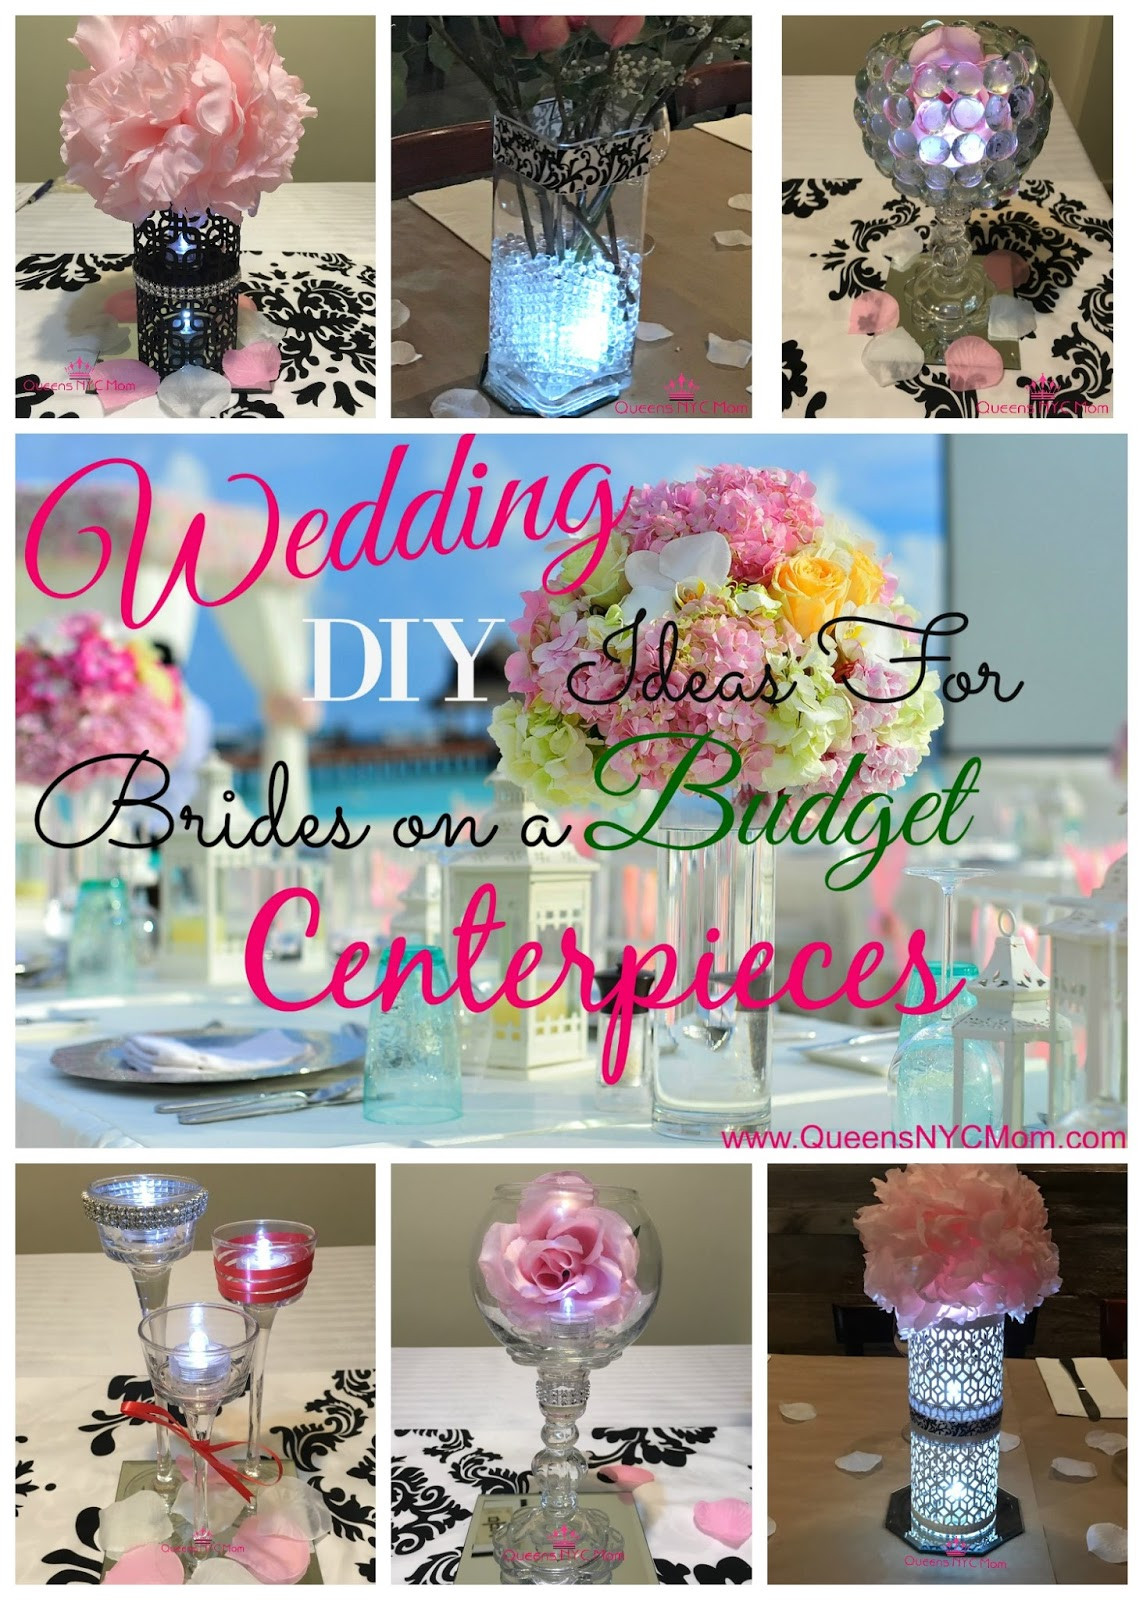 DIY Weddings On A Budget
 Wedding DIY Ideas For Brides A Bud Centerpieces